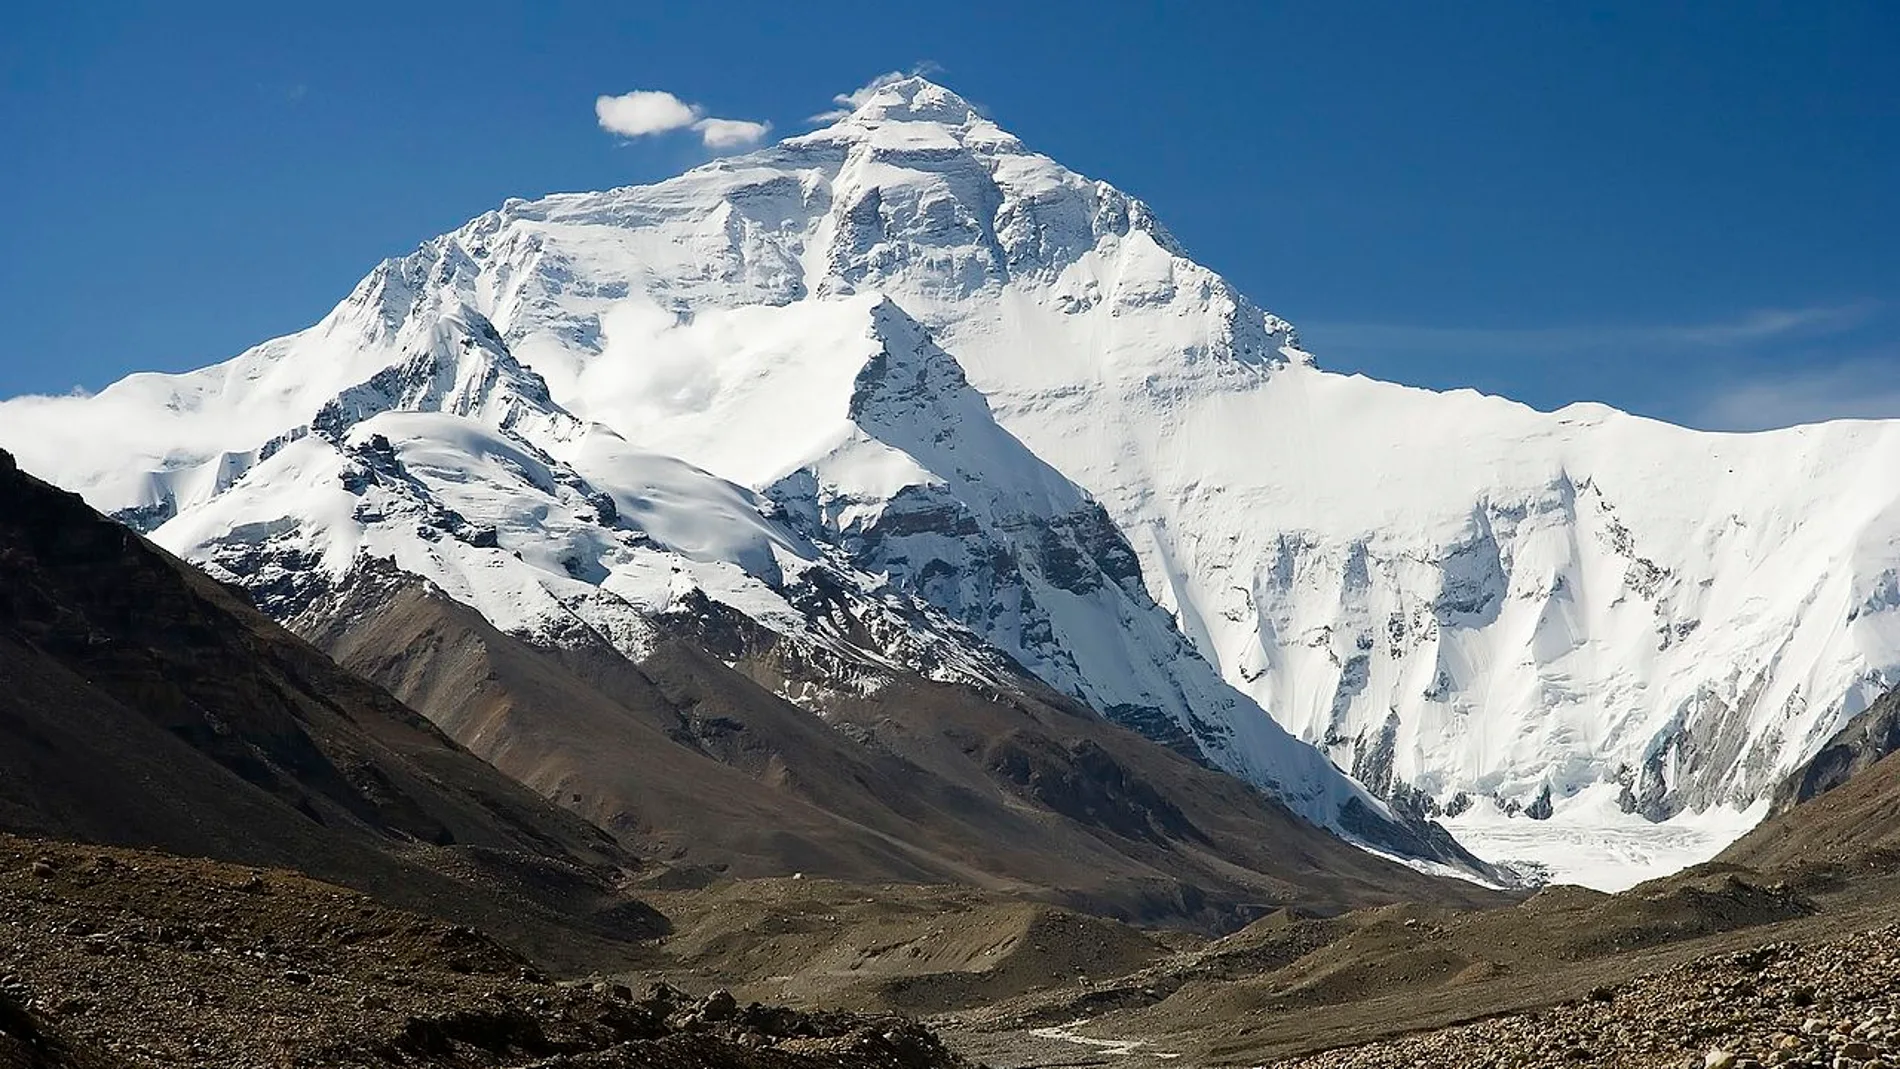 Cara norte del Everest vista desde el camino al Campamento Base, a más de 5 000 metros de altitud